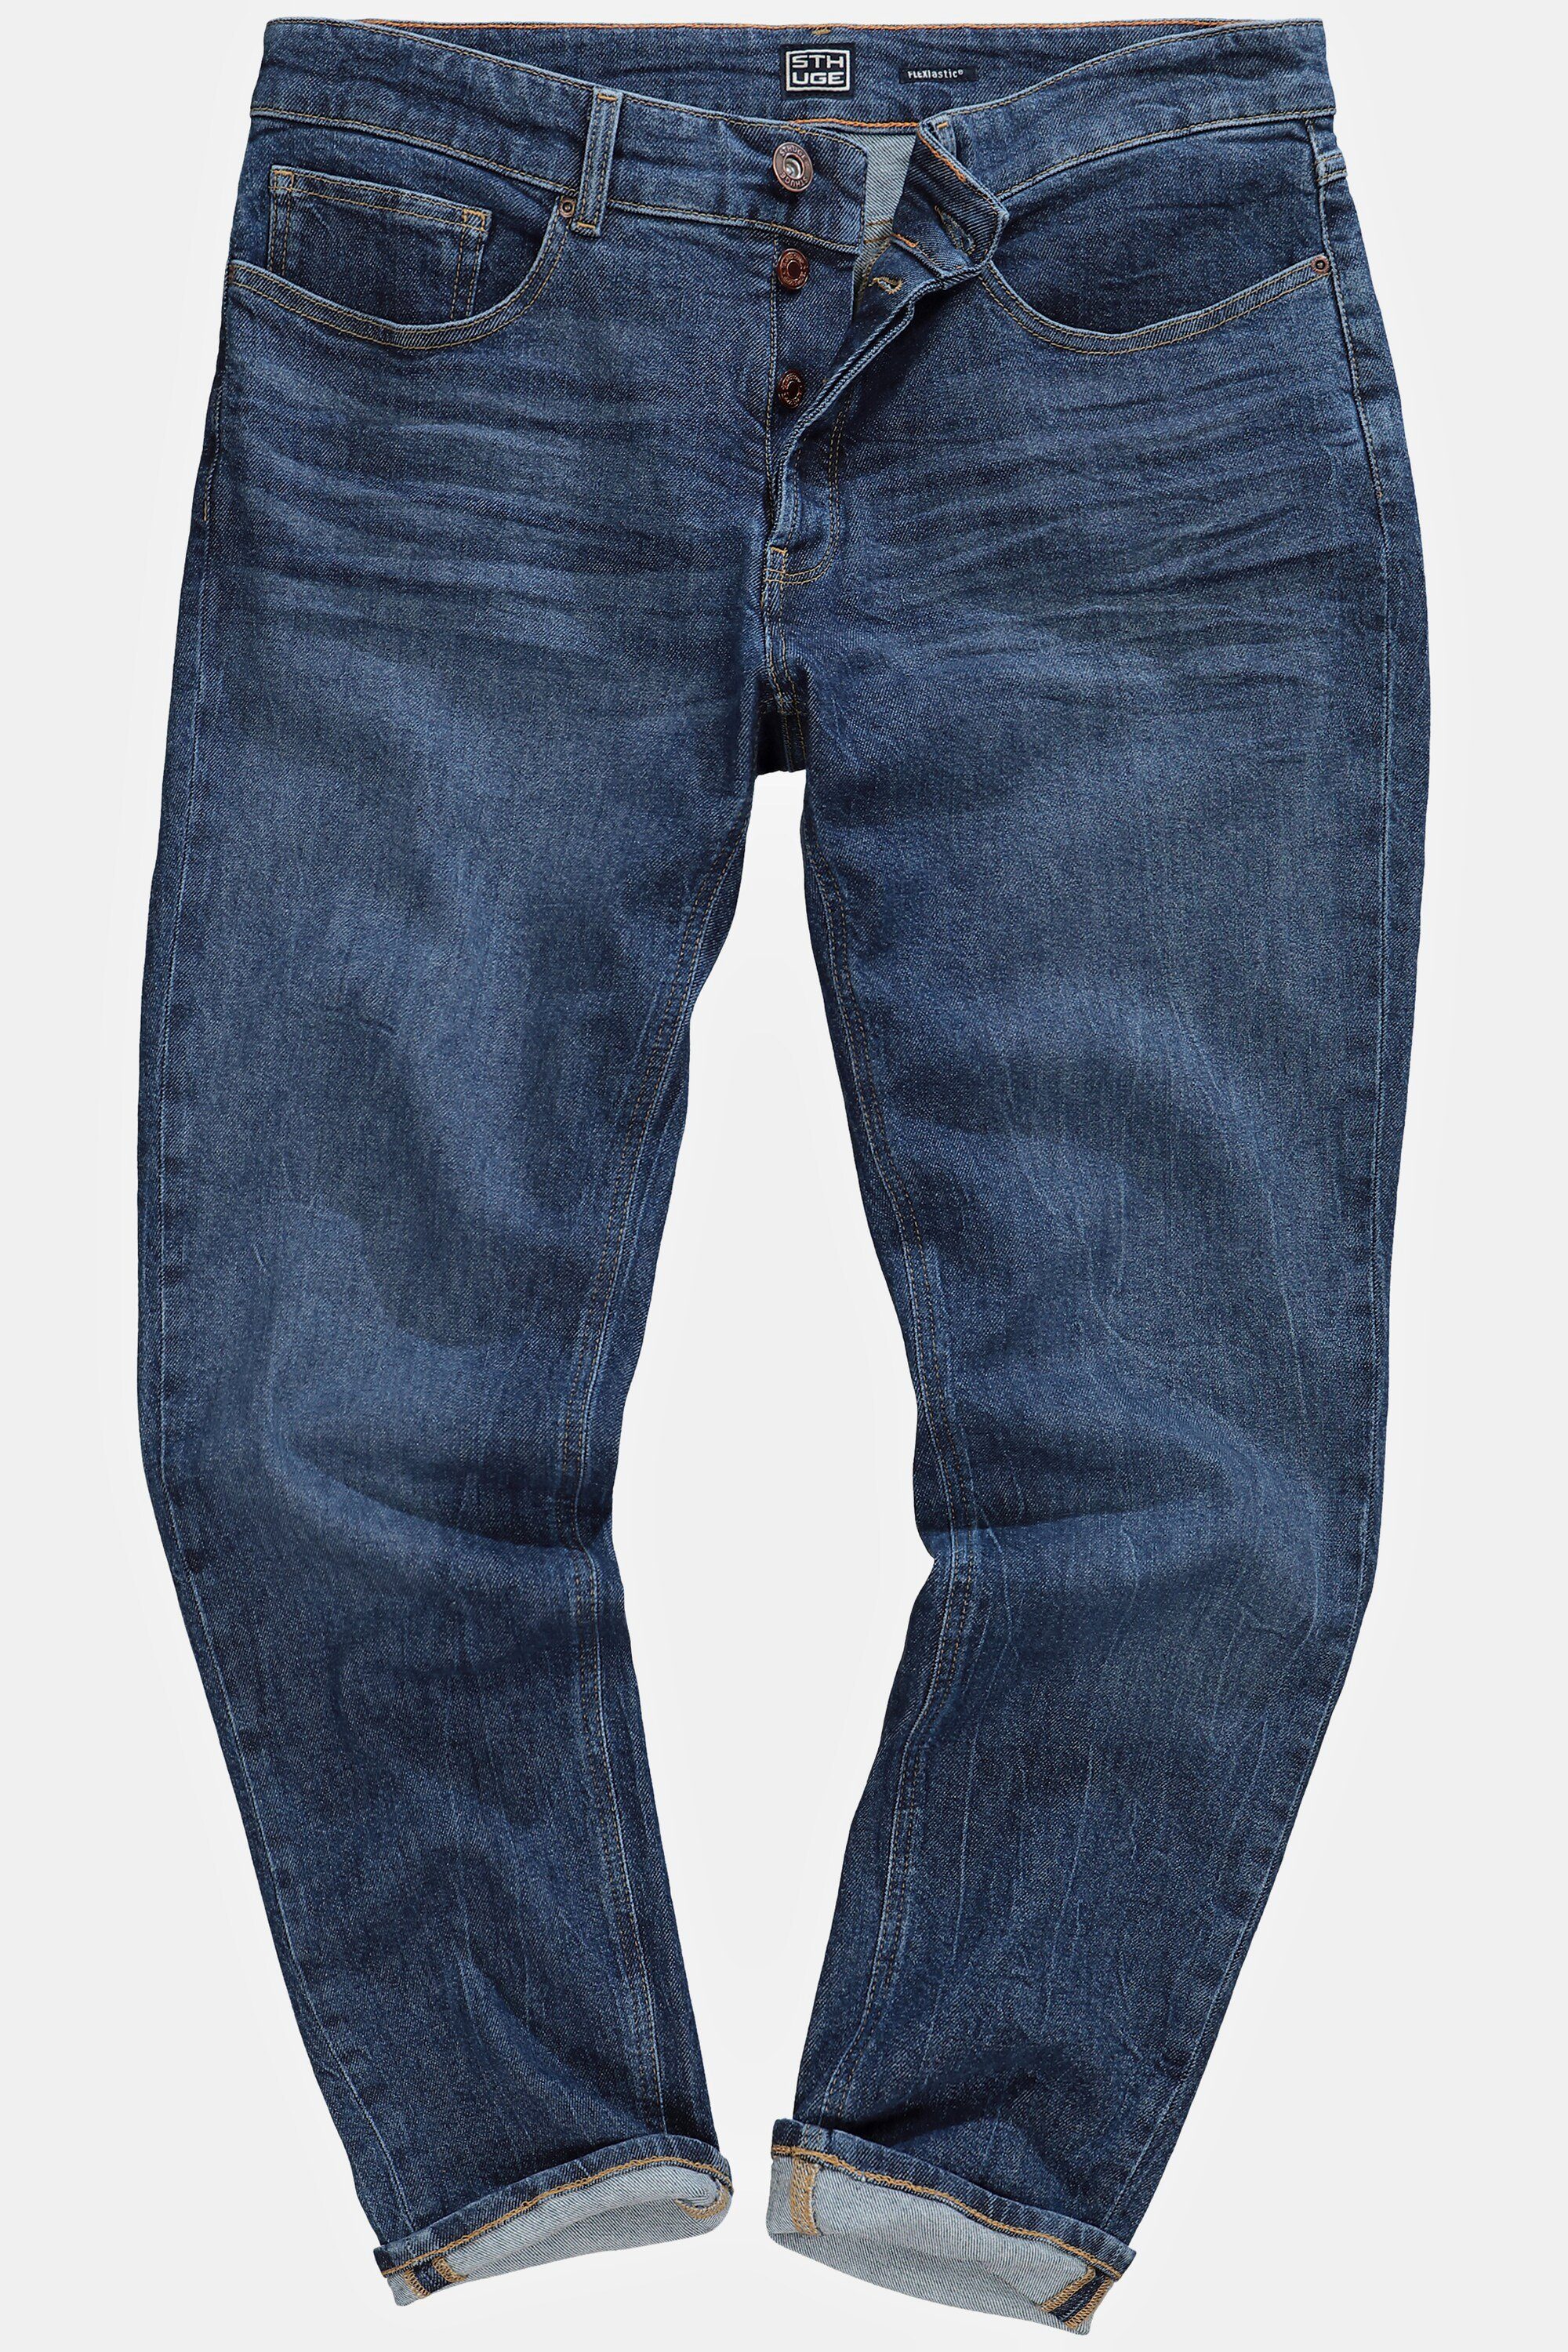 STHUGE Loose Denim Gr. 72 Fit STHUGE 5-Pocket-Jeans bis Jeans 5-Pocket